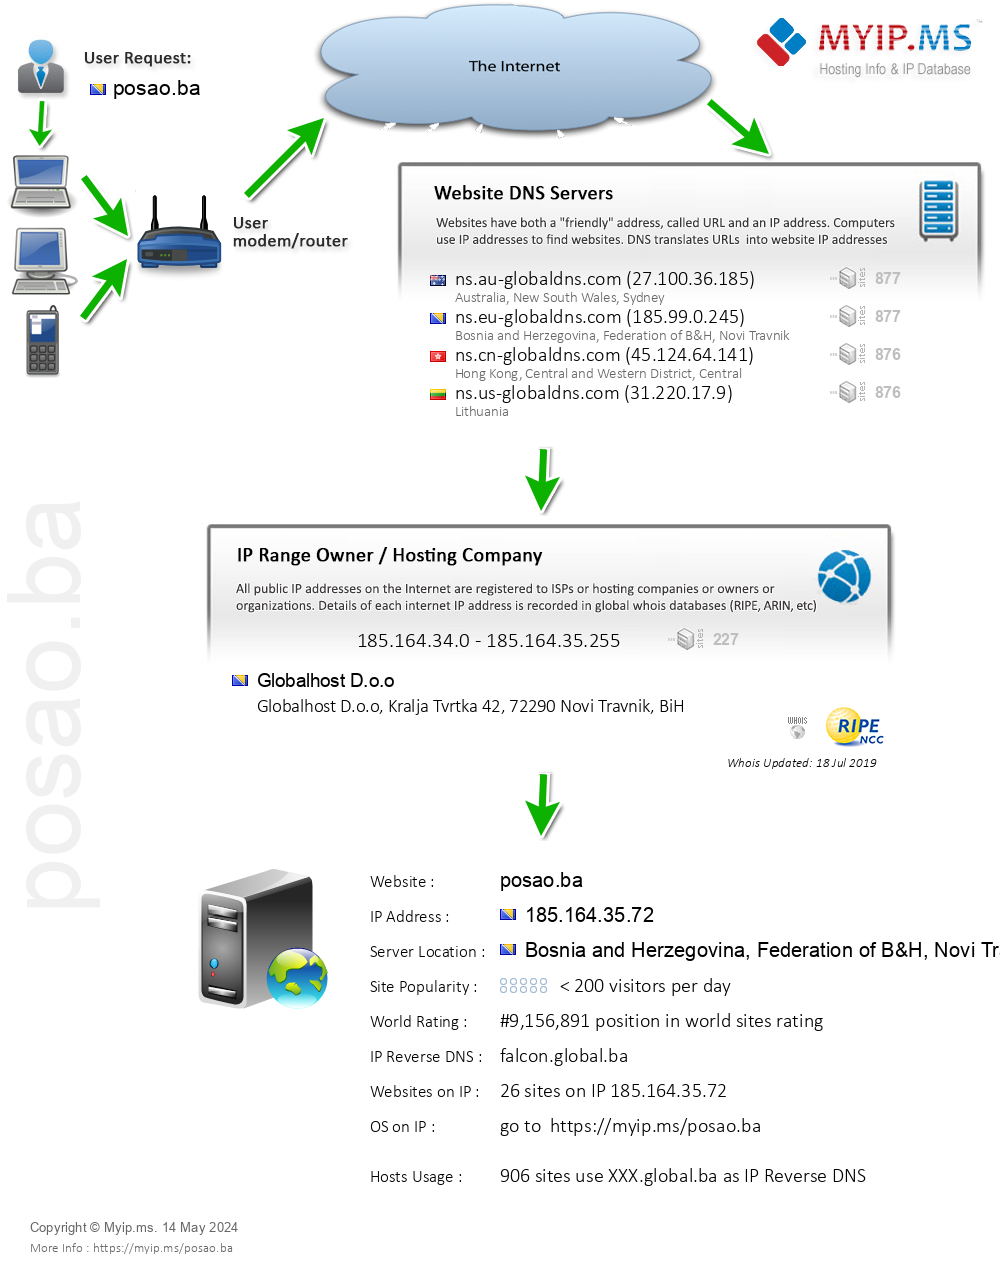 Posao.ba - Website Hosting Visual IP Diagram